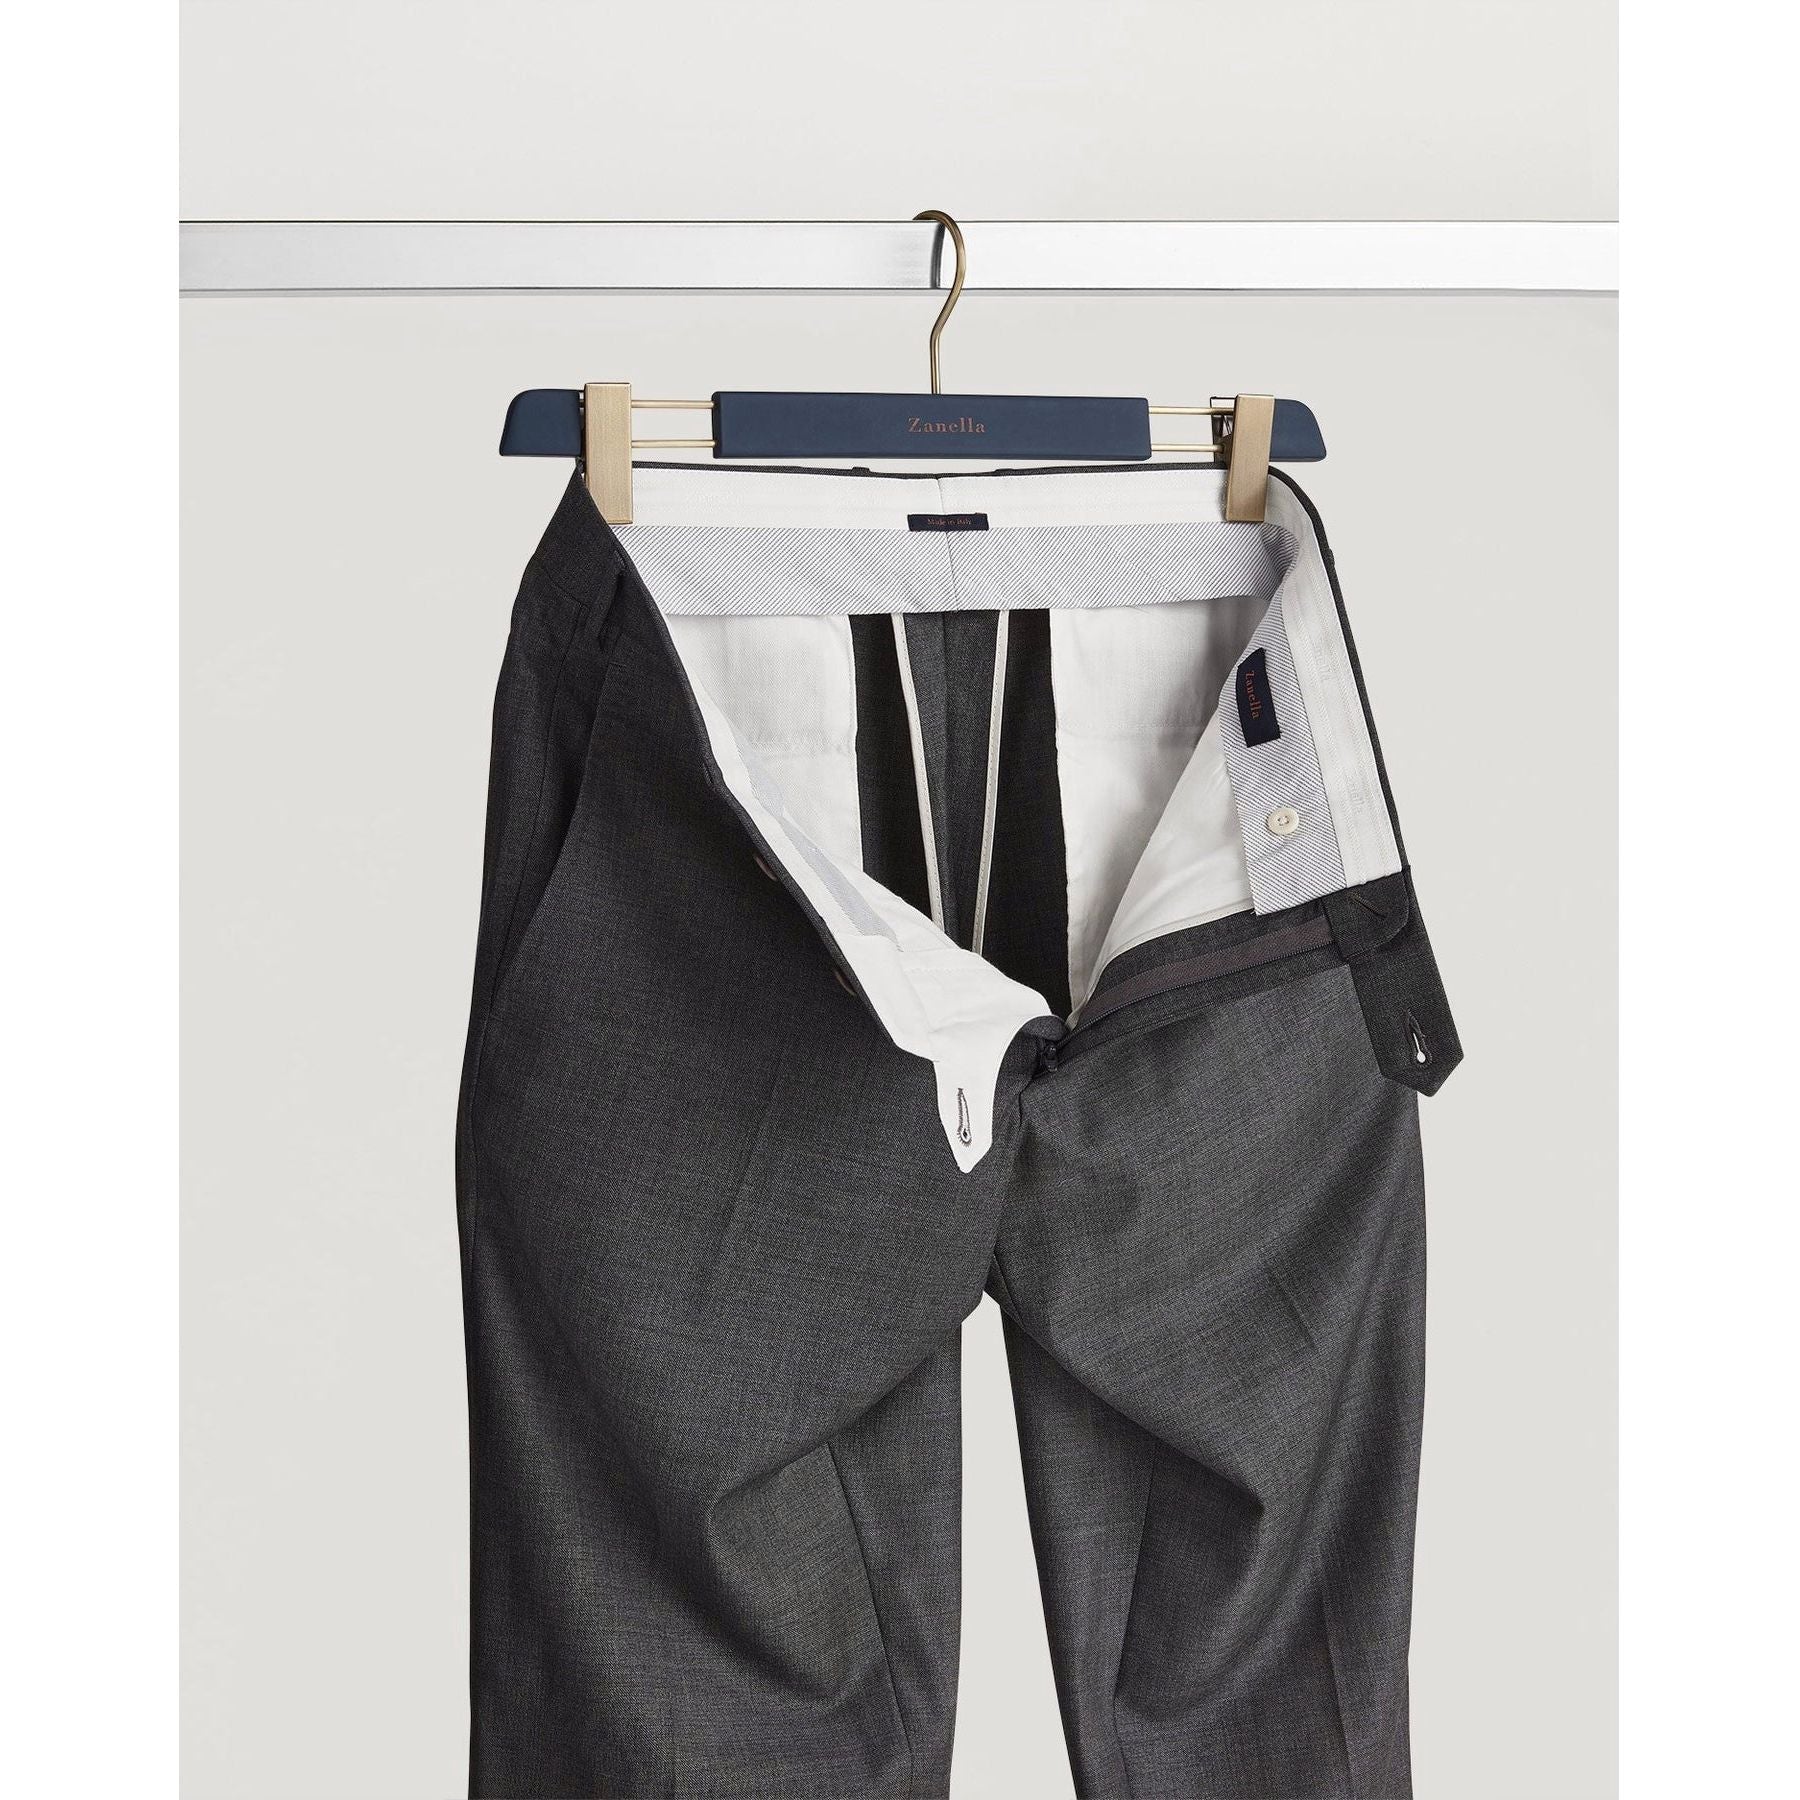 Parker Flat Front Sharkskin Wool Trouser in Medium Grey (Modern Straight Fit) by Zanella